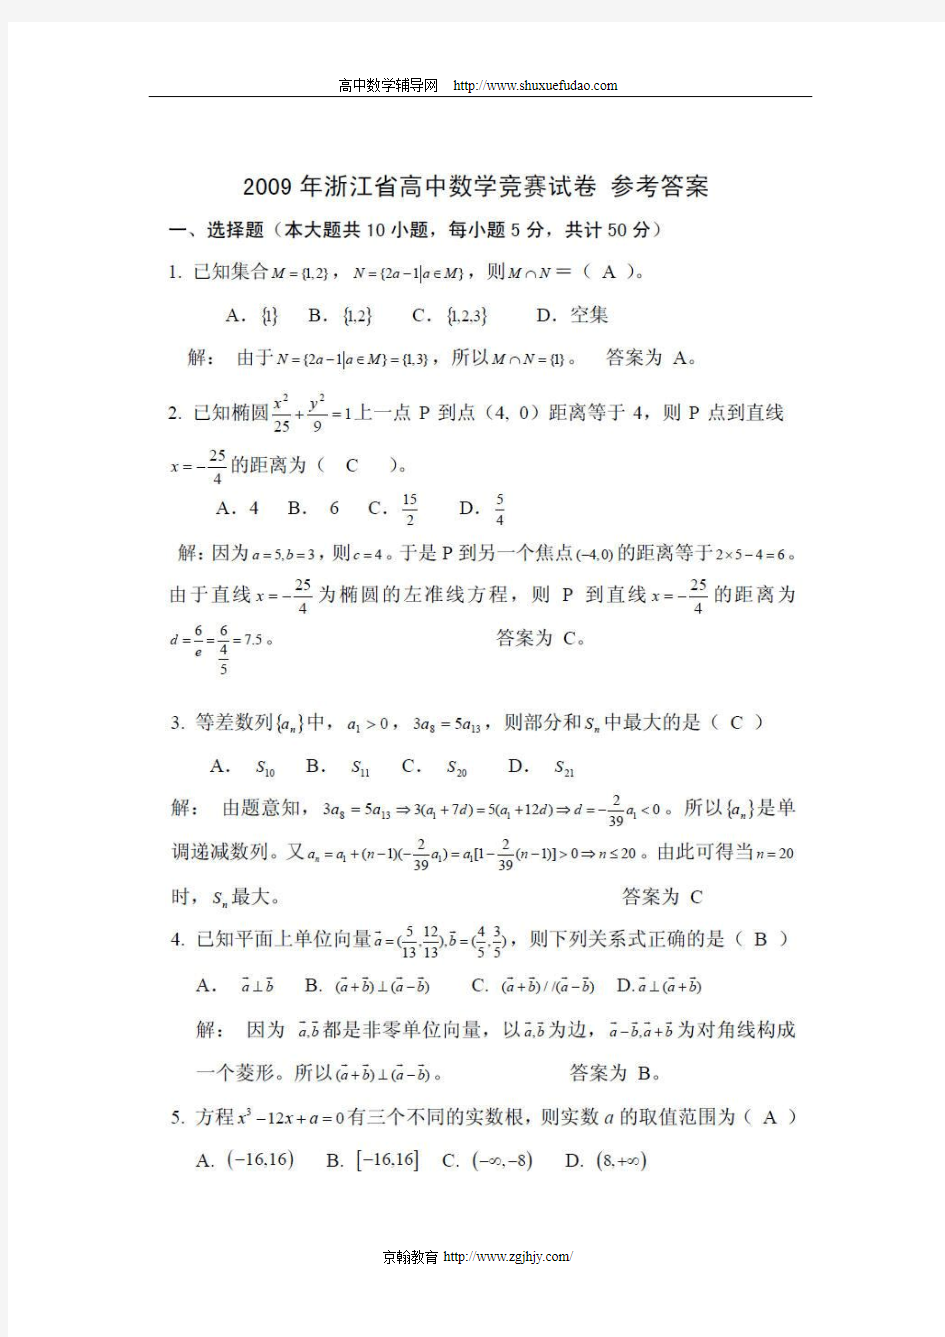 2009年浙江省高中数学竞赛试题及答案